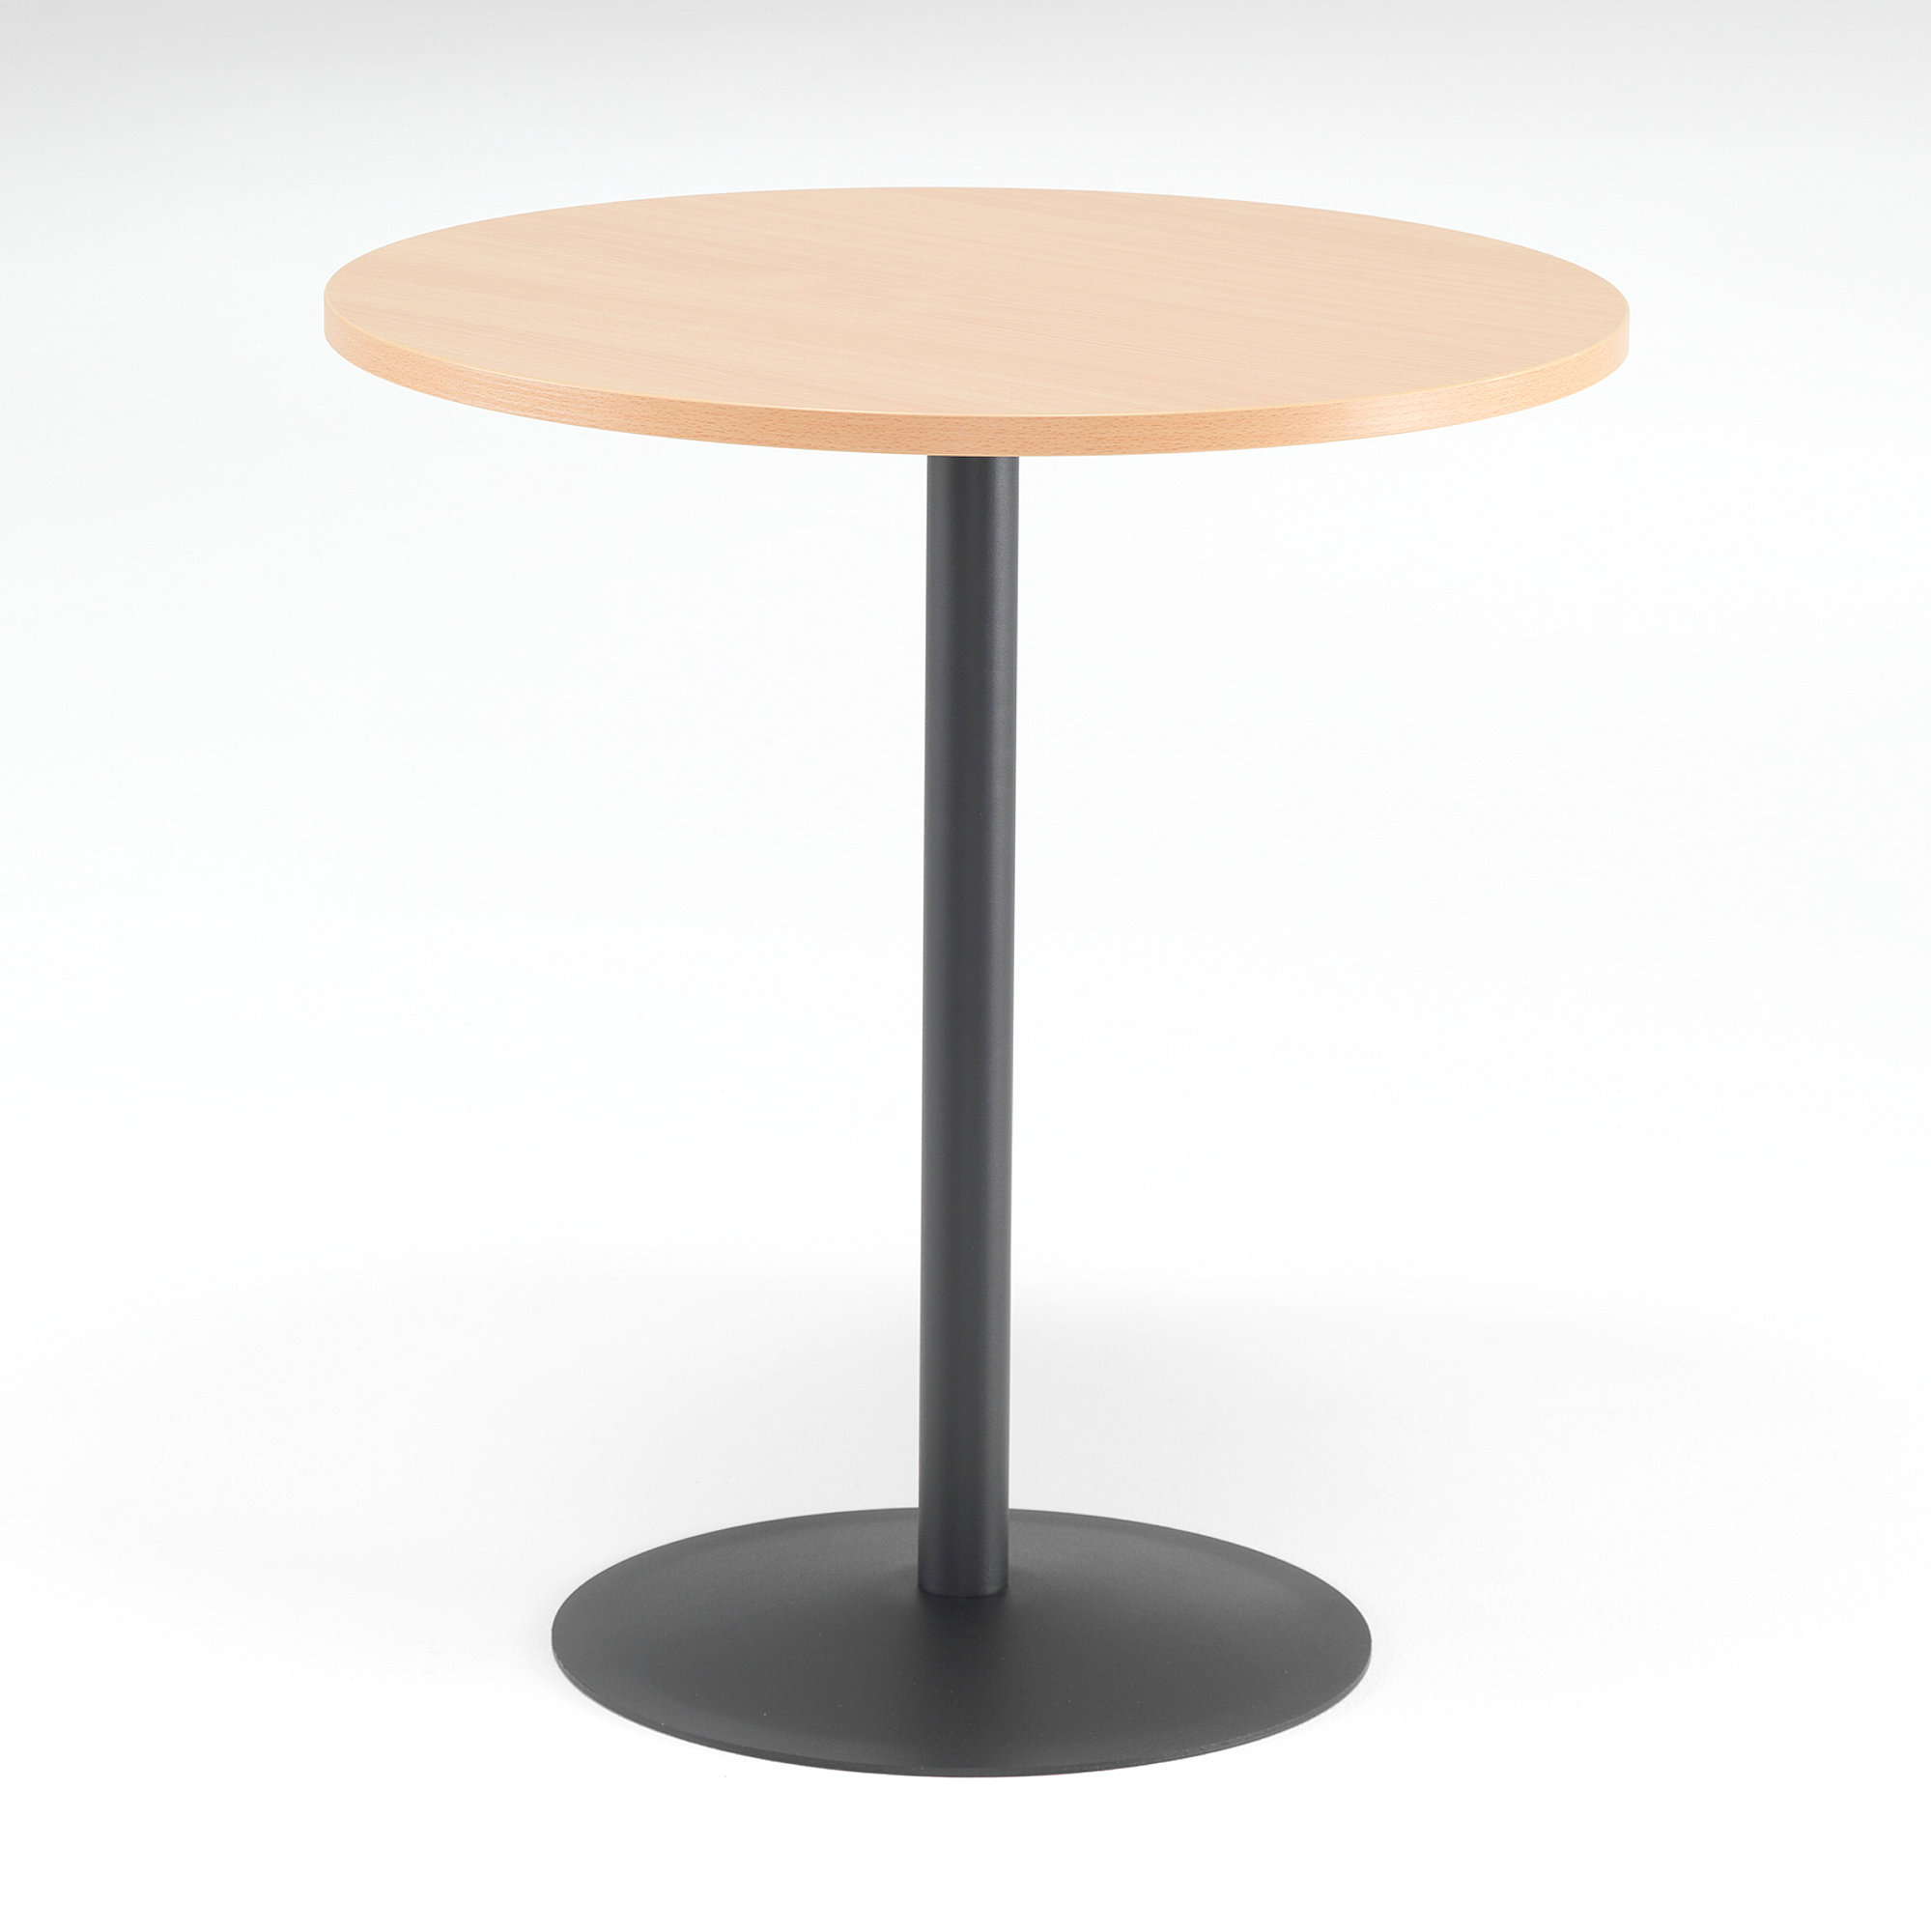 Kaviarenský stôl ASTRID, Ø 700 x V 735 mm, buk / čierna  - zobraziť veľký náhľad